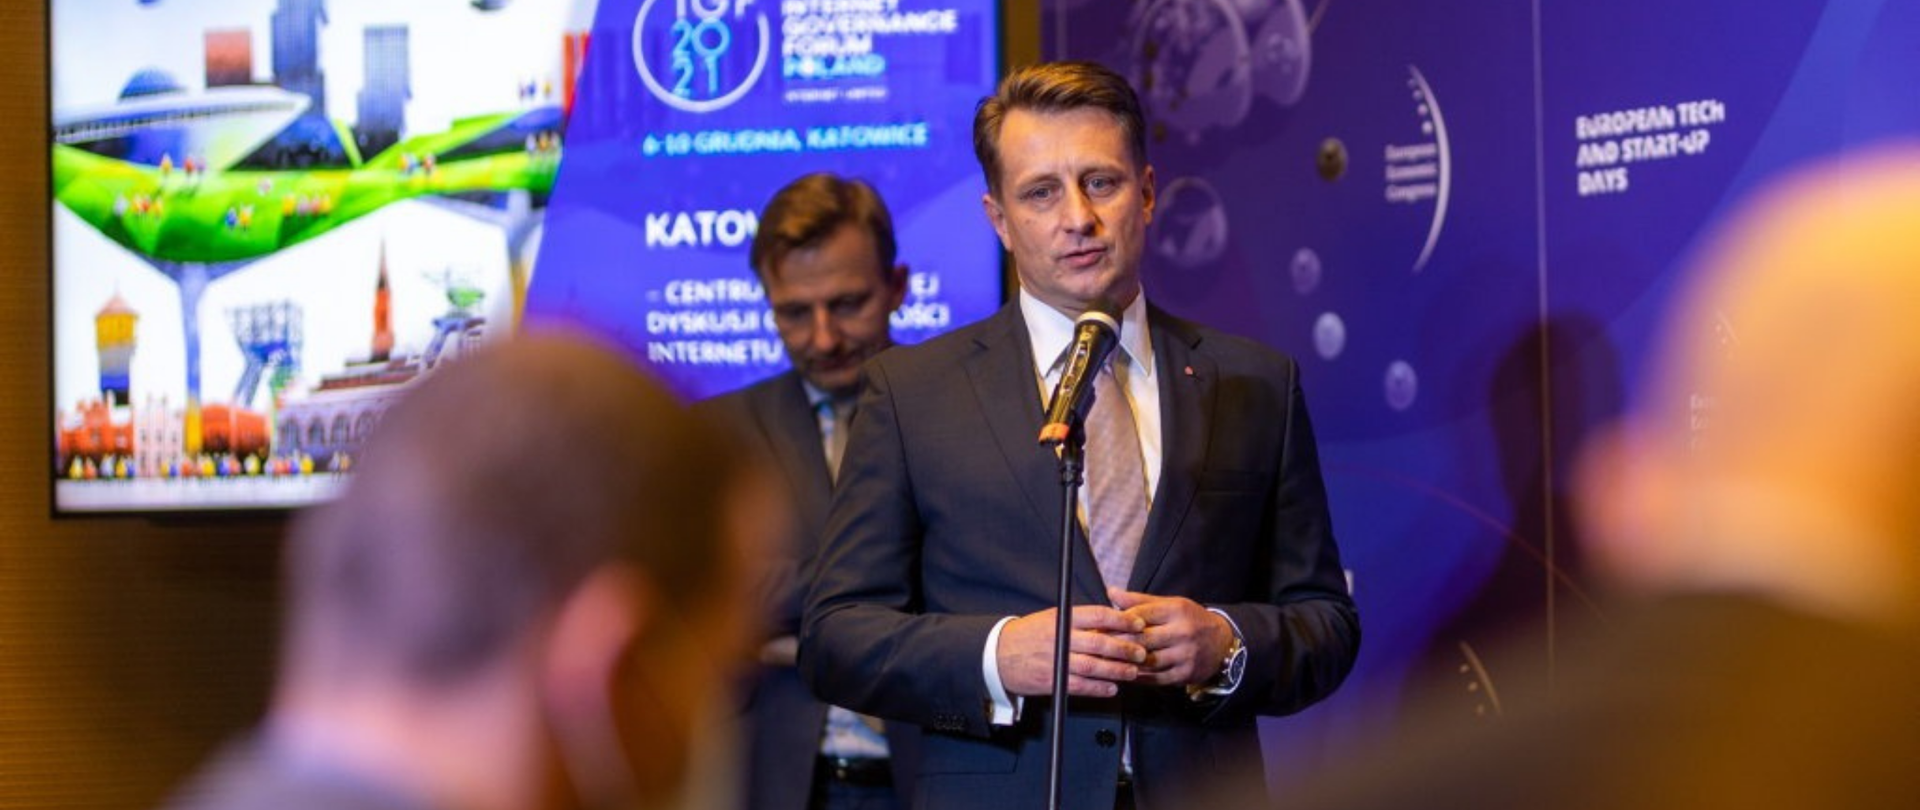 Krzysztof Szubert podczas konferencji prasowej w Katowicach, stoi przed mikrofonem, za nim prezydent Katowic.